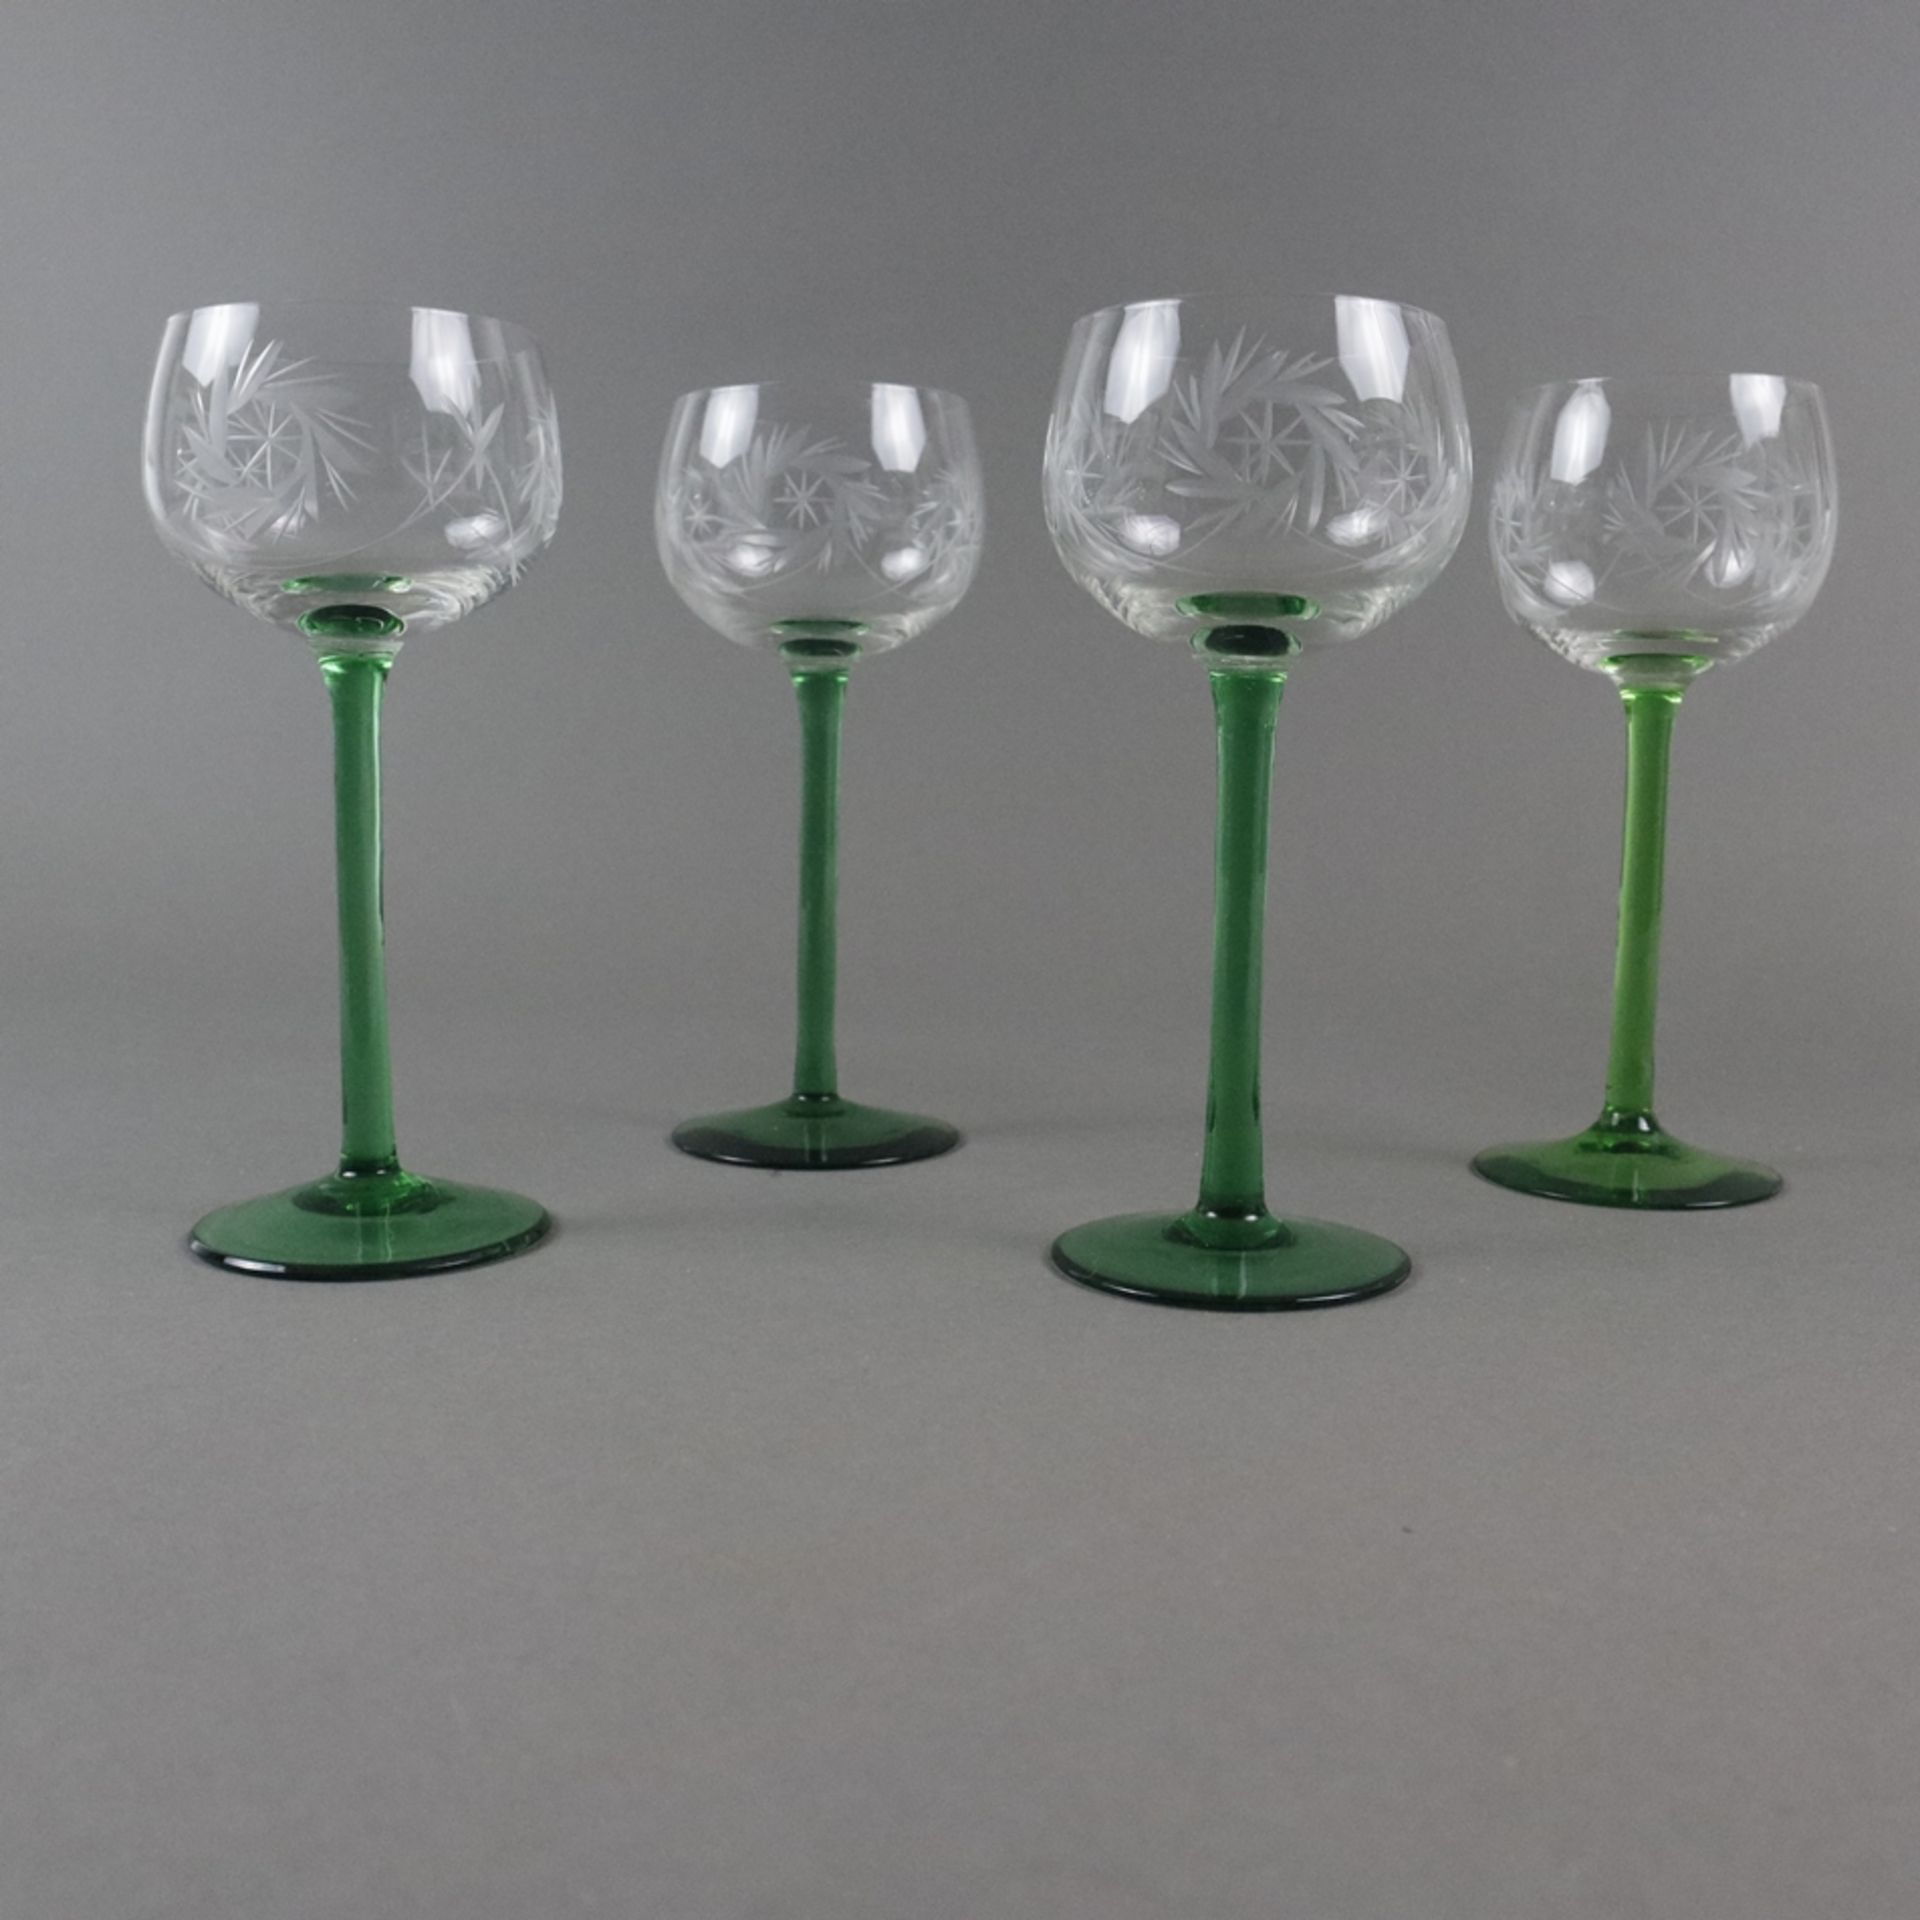 Vier Fußgläser - Kelch farbloses Glas mit Gravurdekor, Schaft und Rundfuß grünes Glas (1x im Farbto